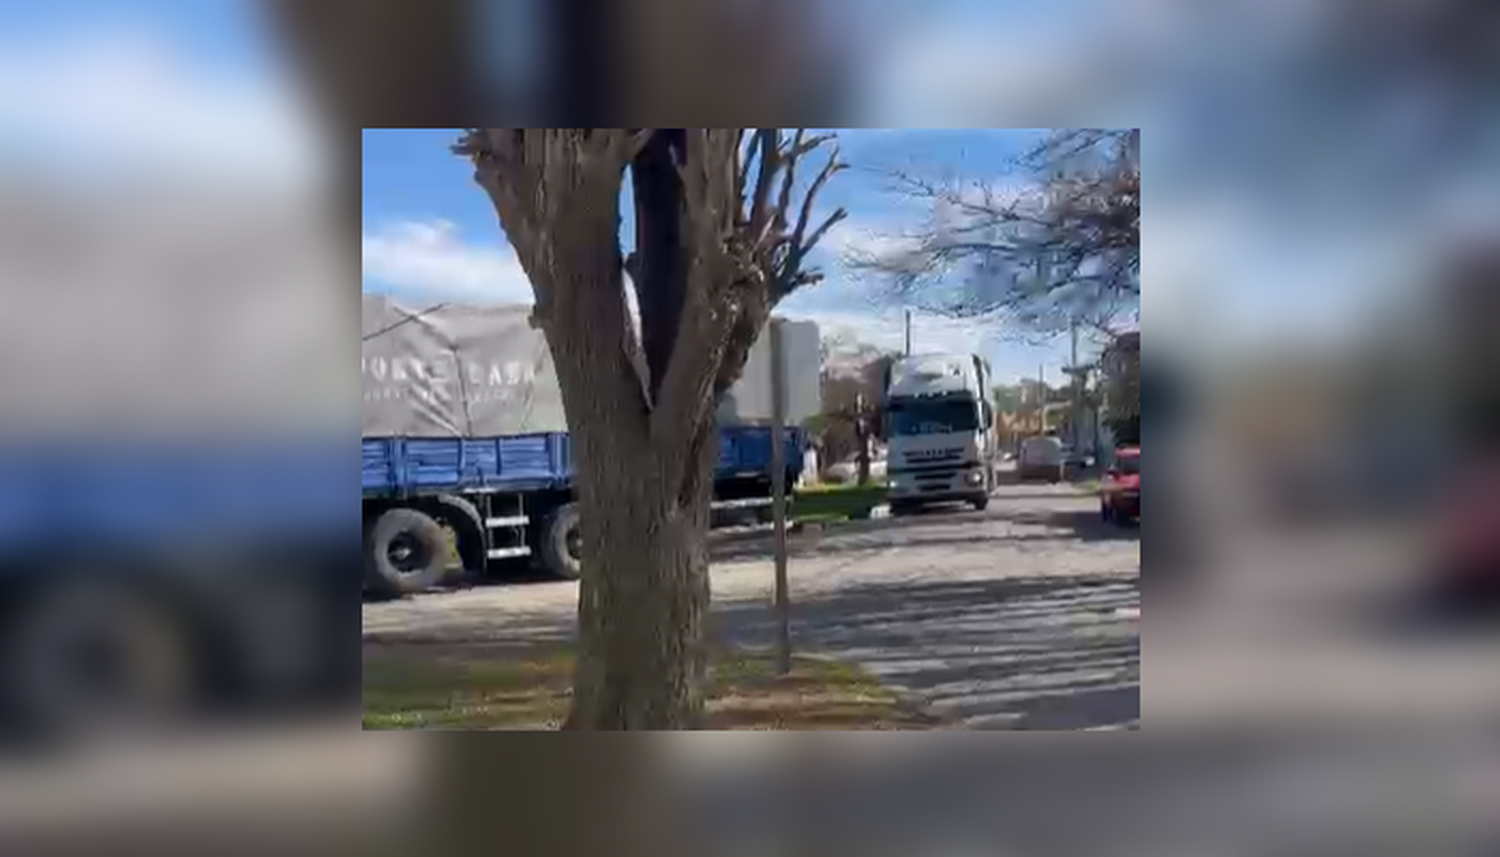 Camiones dentro de San Pedro: "Es un peligro"